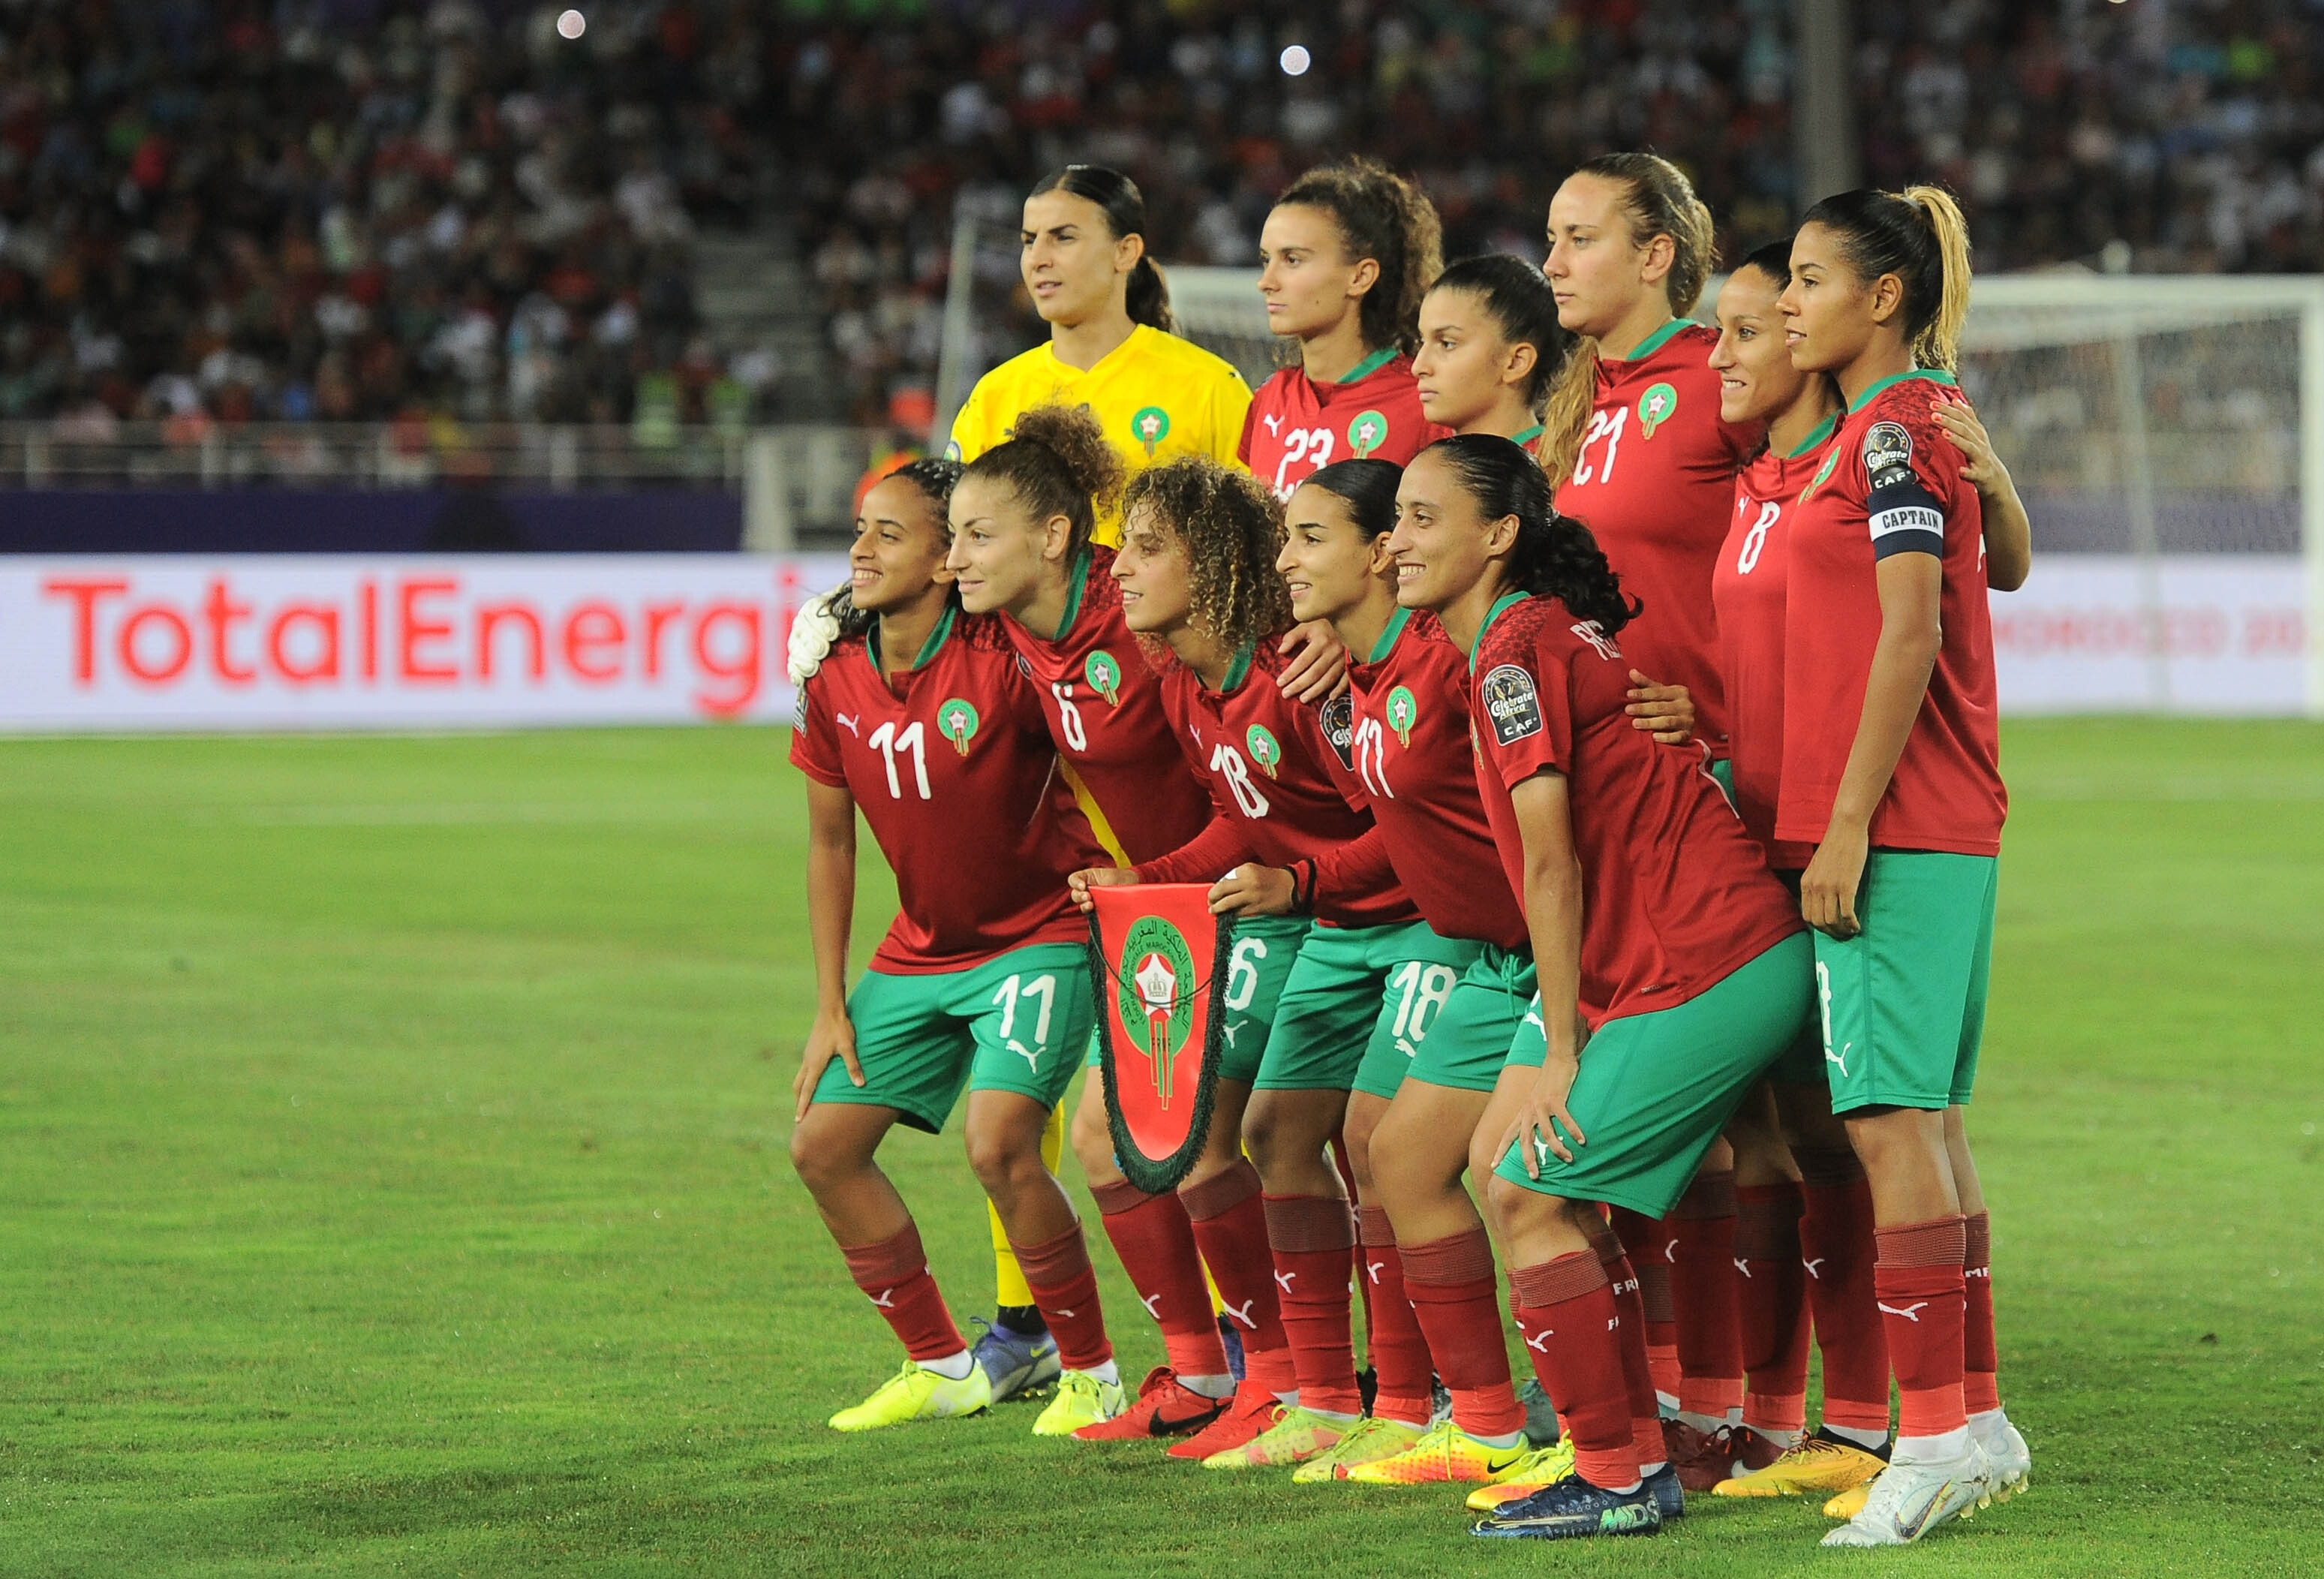 Erfolg der marokkanischen Frauen-Nationalmannschaft